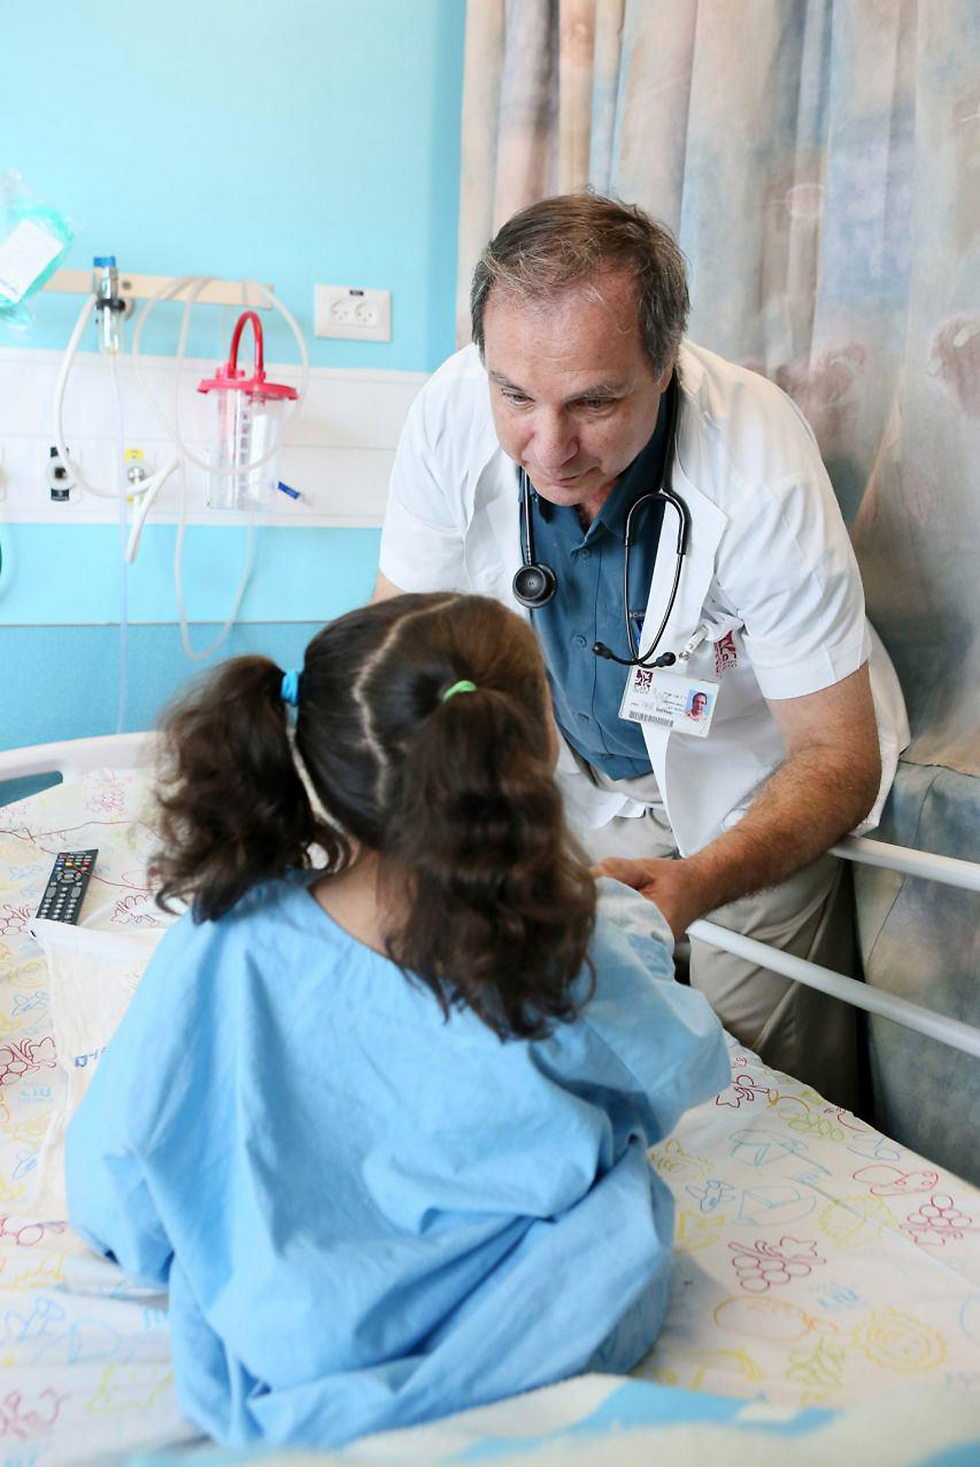 ד"ר צביקה אדלר מבית החולים רמב"ם לצד פ' בת ה-5 (צילום: פיוטר פליטר, רמב"ם) (צילום: פיוטר פליטר, רמב